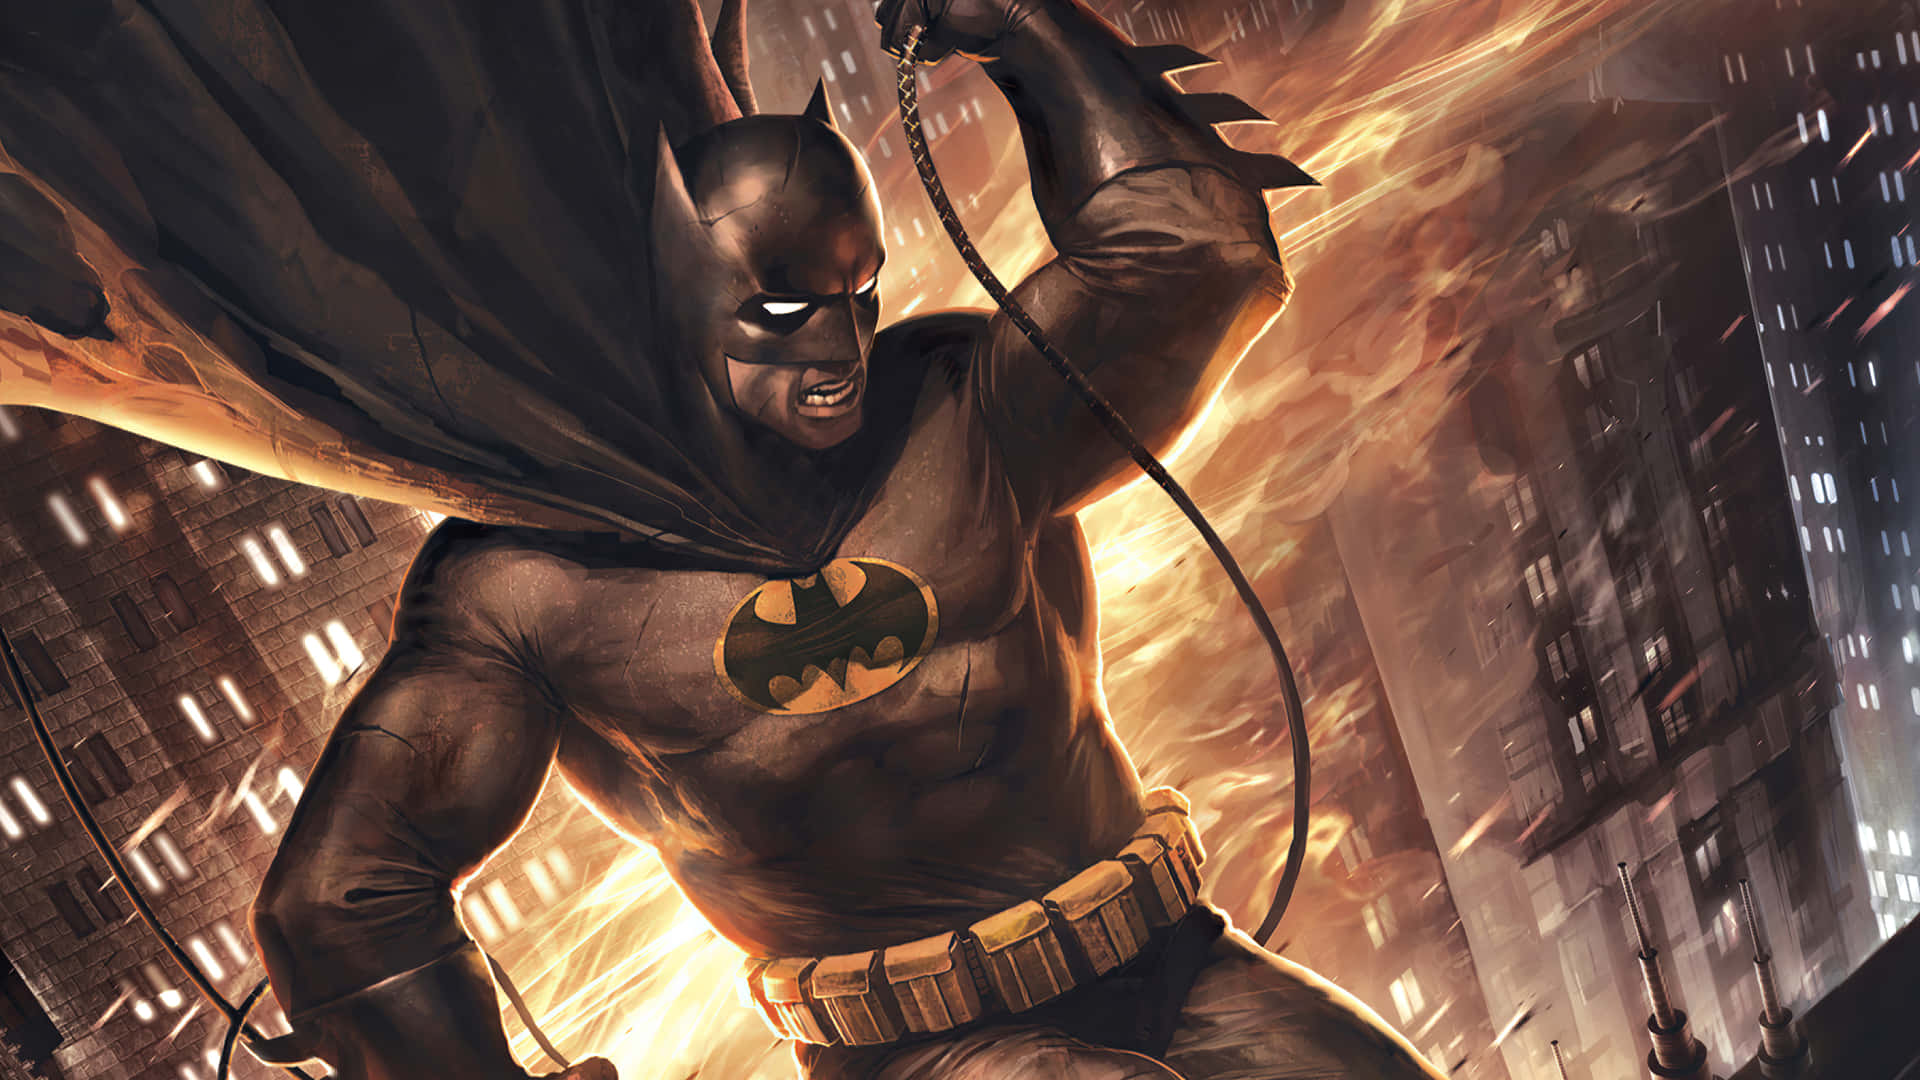 Dyk ned i Magi af Batman City med denne episk tapet. Wallpaper